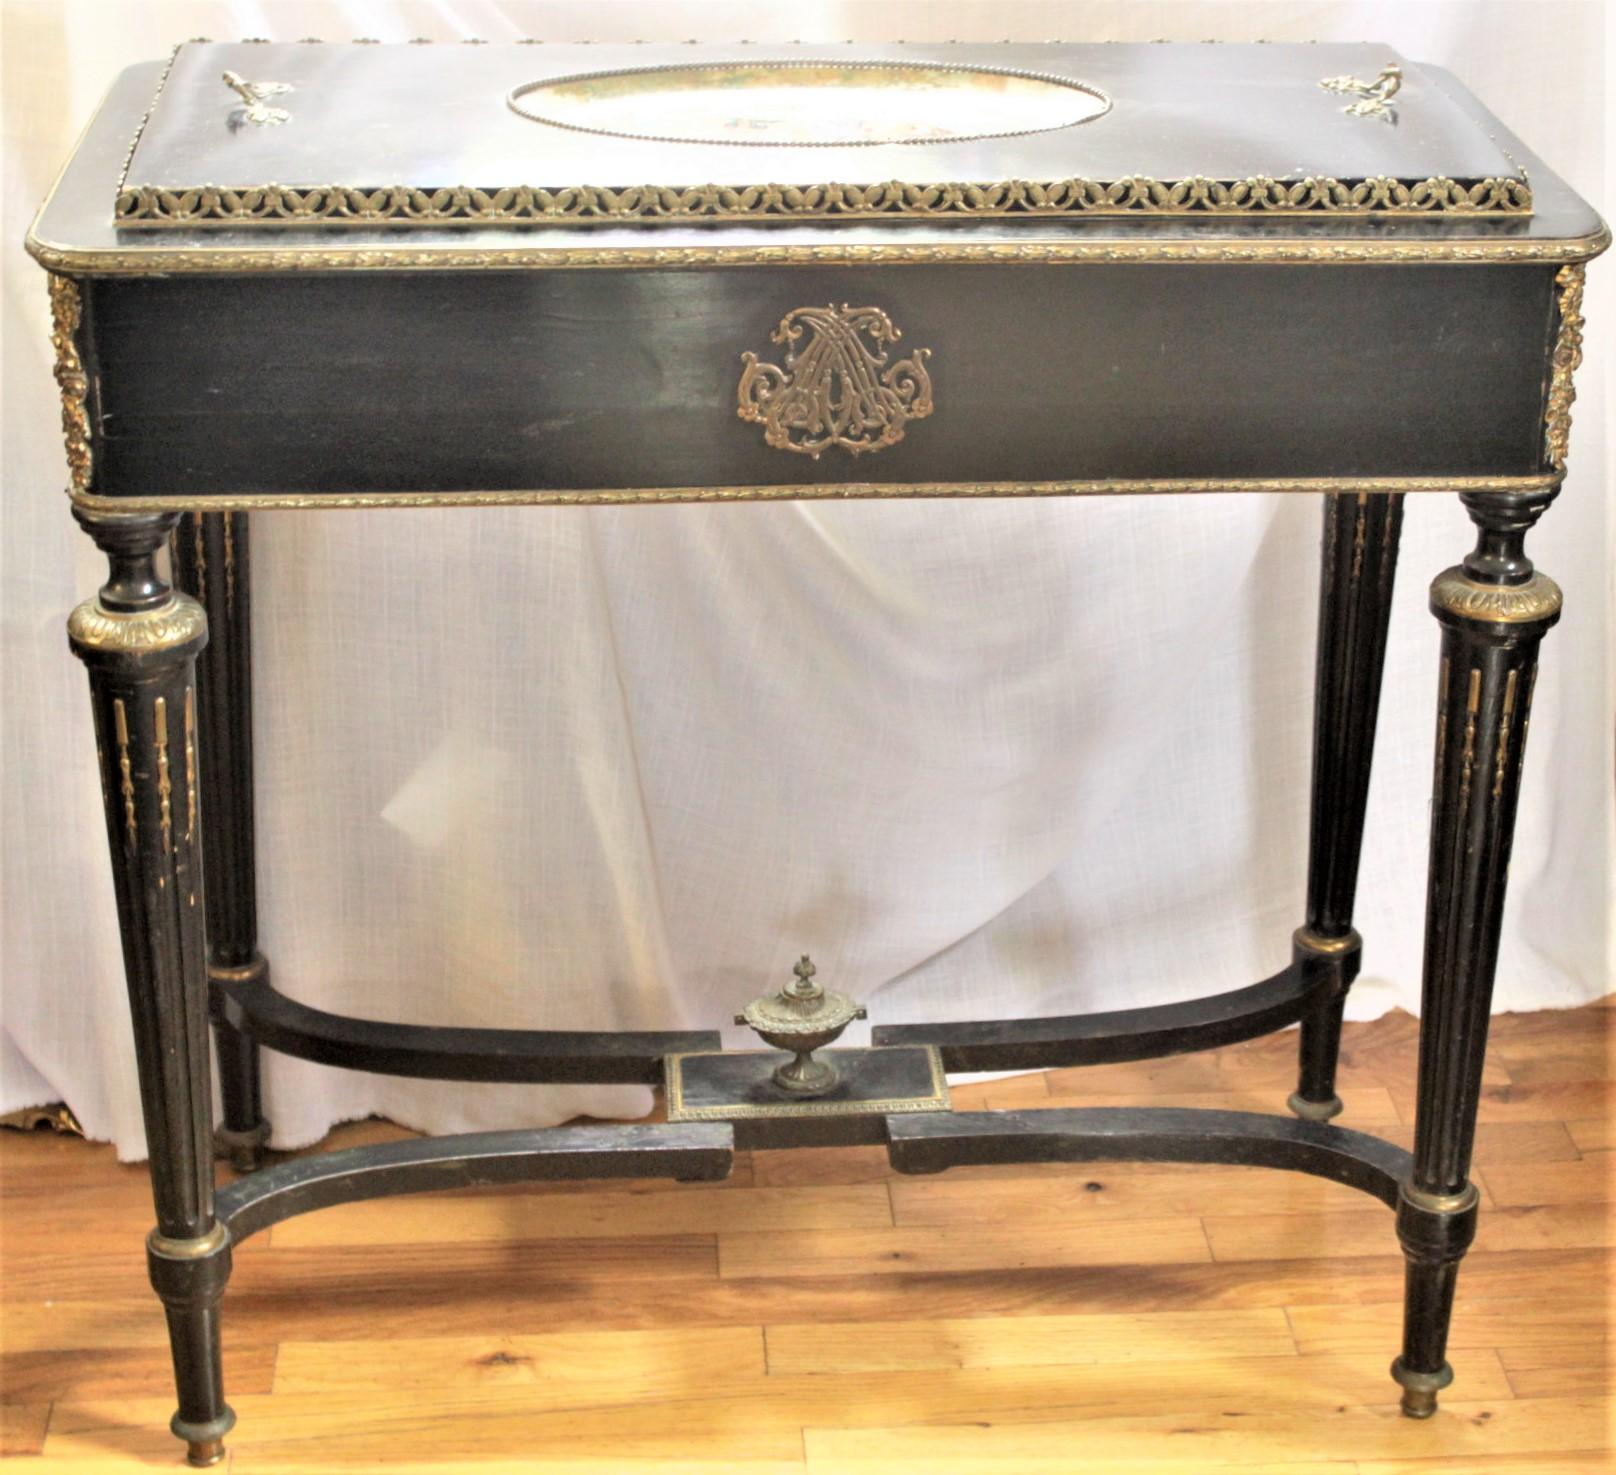 Dieser antike Jardiniere-Tisch ist unmarkiert, aber vermutlich in England oder Frankreich um 1890 im Louis-XVI-Stil hergestellt worden. Der Tisch besteht aus Holz, das schwarz mit goldenen Akzenten lackiert wurde. Auf der Platte befindet sich ein